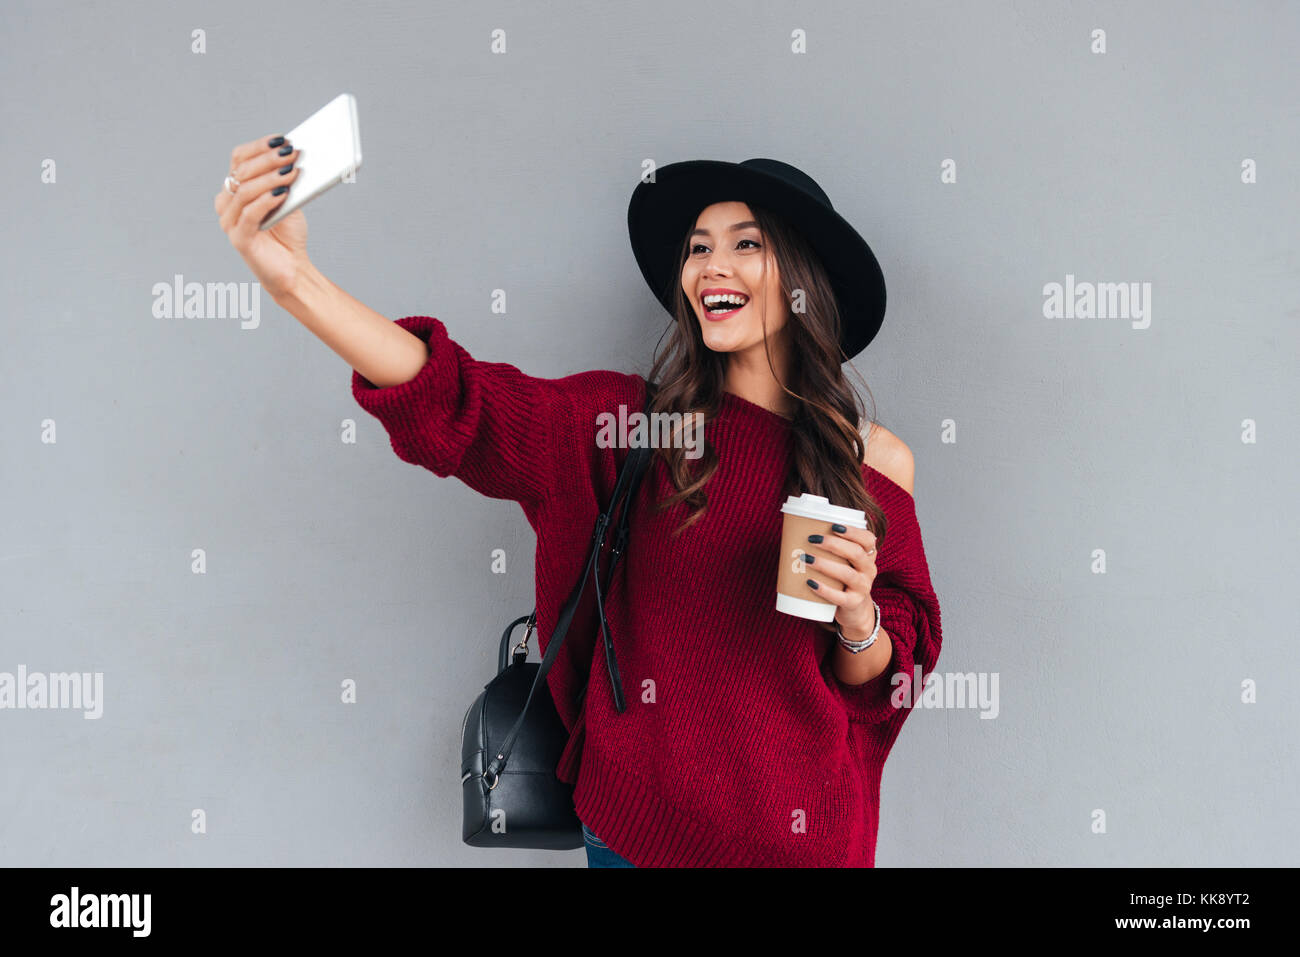 Ritratto di un giovane sorridente ragazza asiatica vestita di hat e maglione holding tazza di caffè mentre prendendo un selfie all'aperto Foto Stock